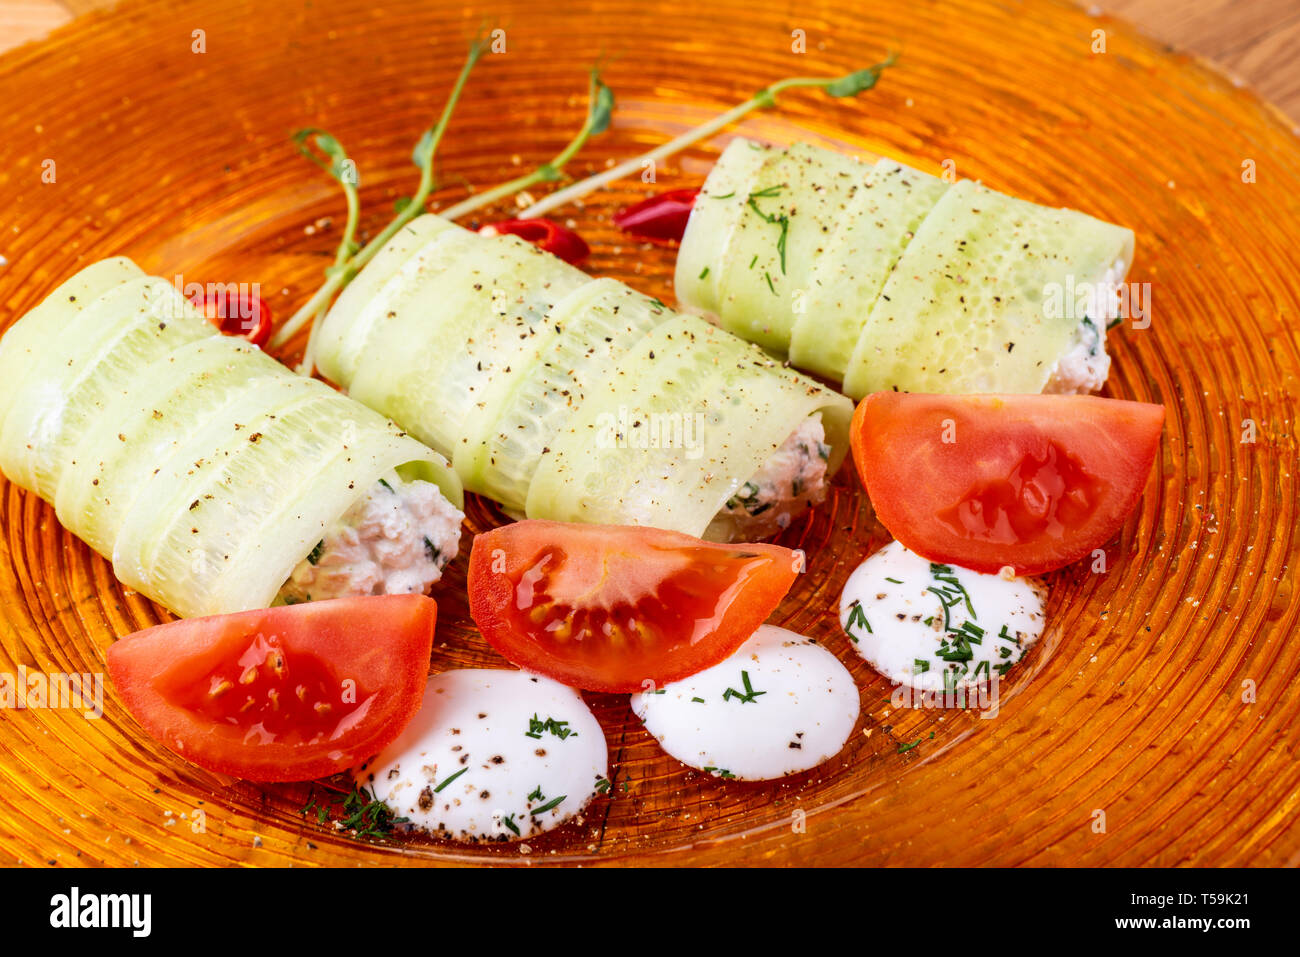 Il cibo italiano sfondo. Mozzarella, di foglie di basilico fresco, pomodoro, olio d'oliva, panini al formaggio e verdi sulla piastra. Close-up Foto Stock